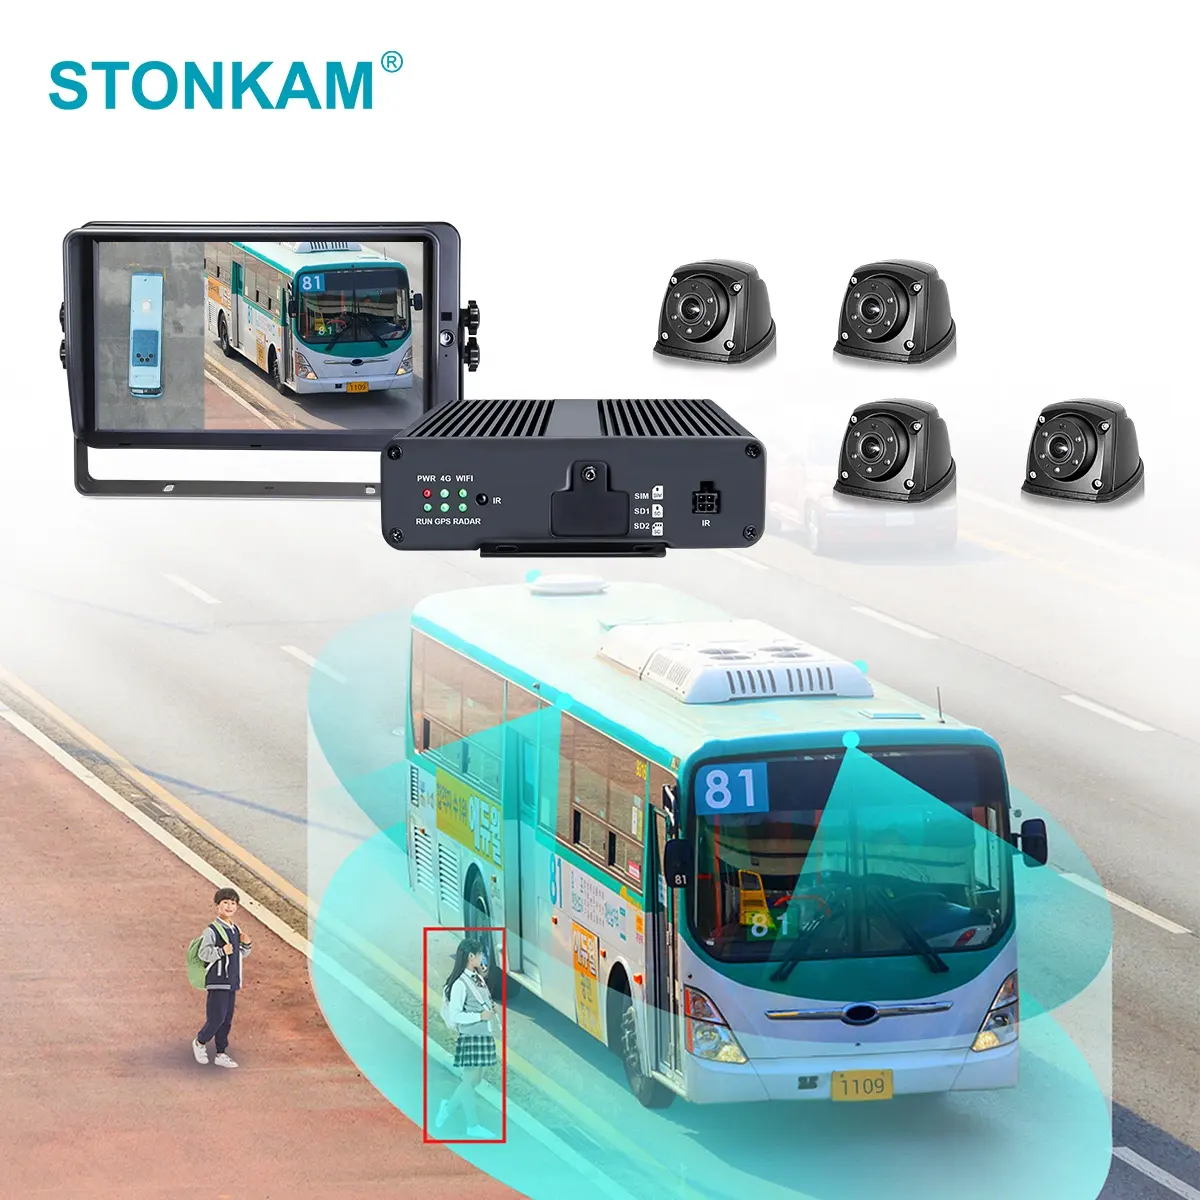 ट्रक उन्नत ट्रक बस निगरानी समाधान के लिए बीएसडी अलार्म के साथ बस के लिए STONKAM 360 बर्ड आई व्यू कैमरा